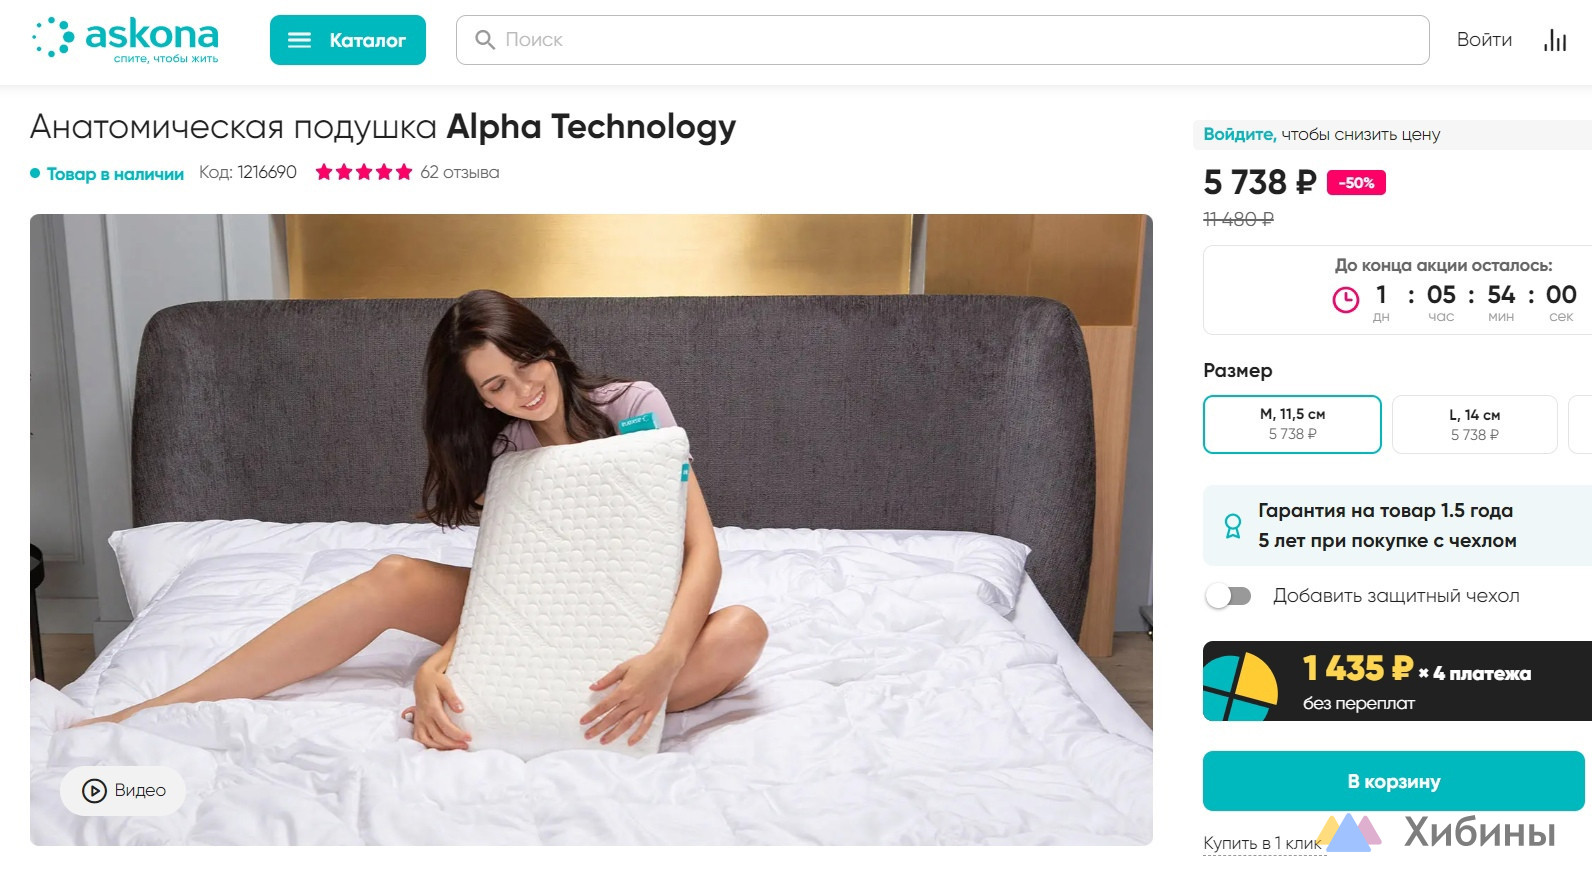 Продаю анатомическую подушку Alpha Technology Аskona